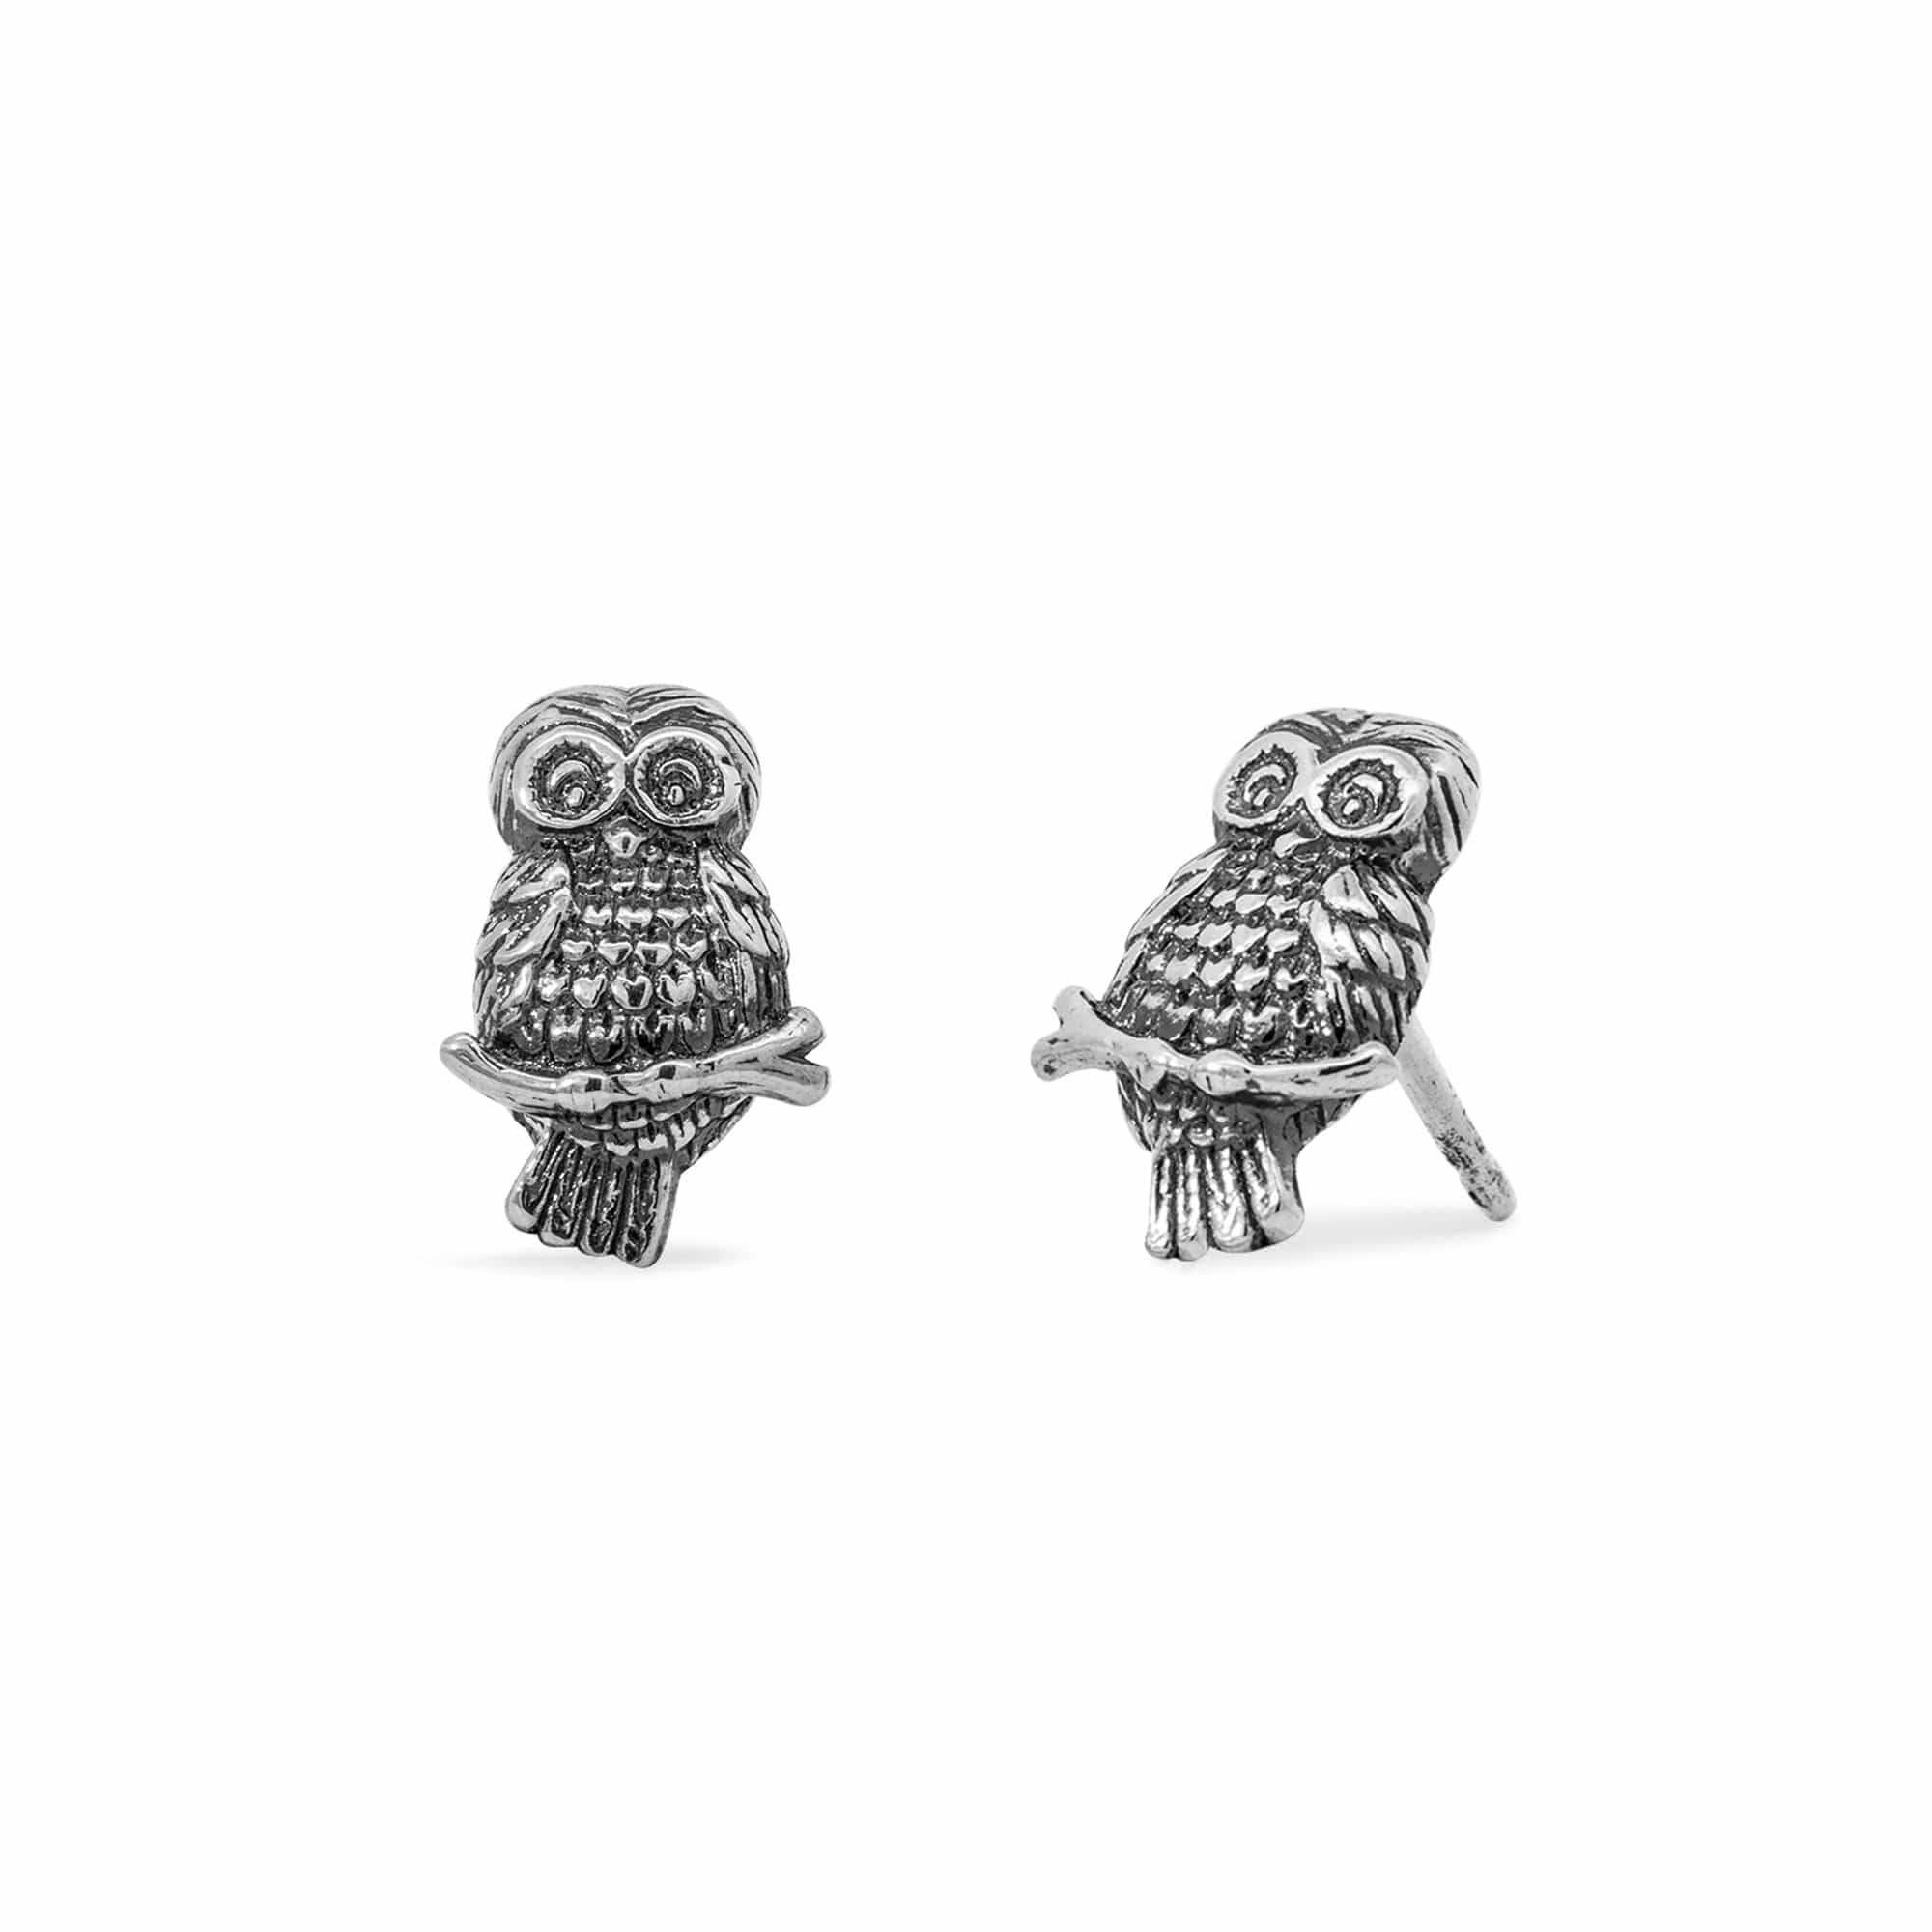 Boma Jewelry Earrings Wise Owl Stud Earrings